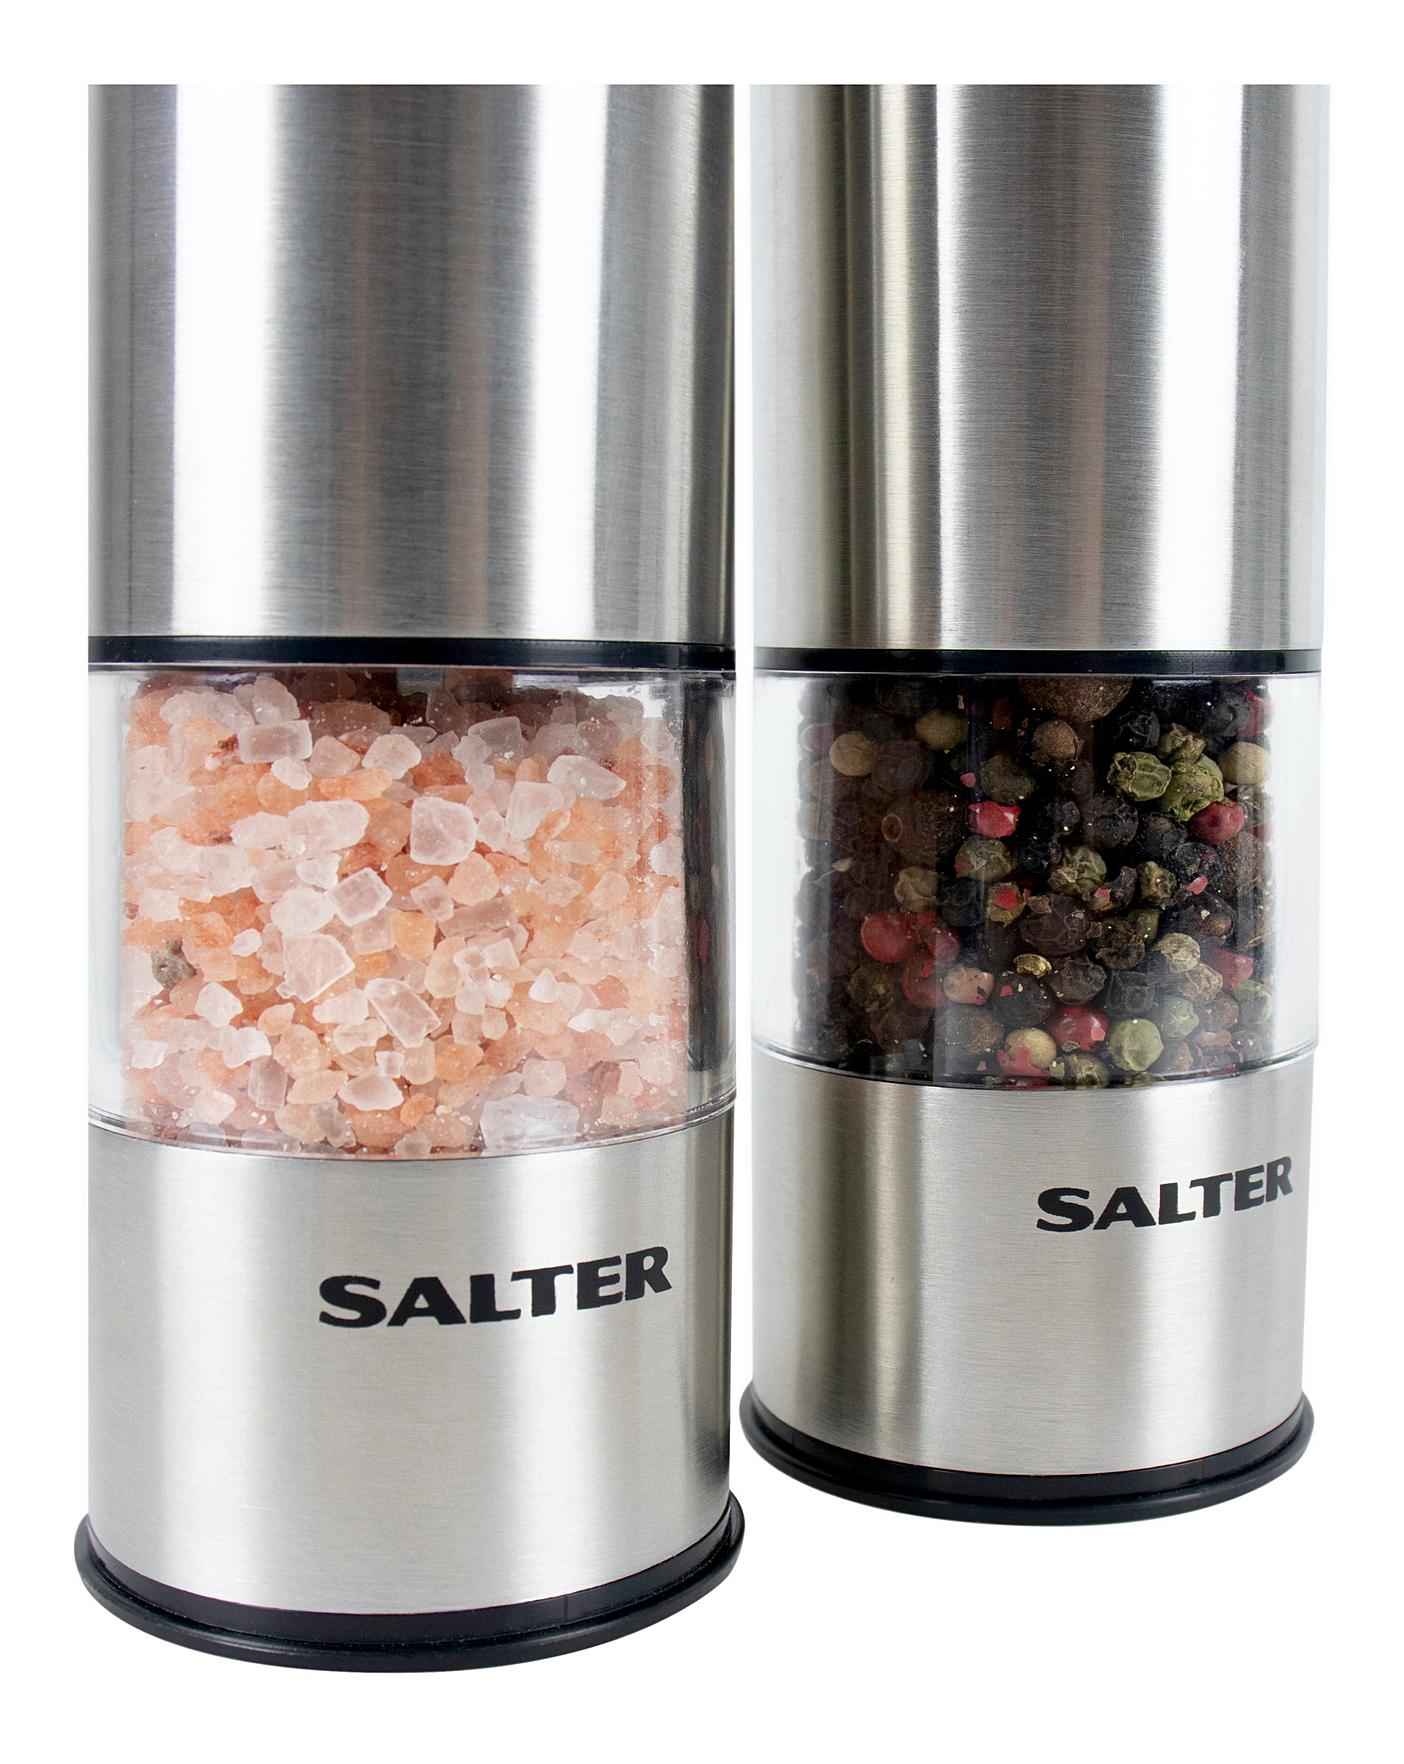 Salter Electric Salt & Pepper Grinder Set